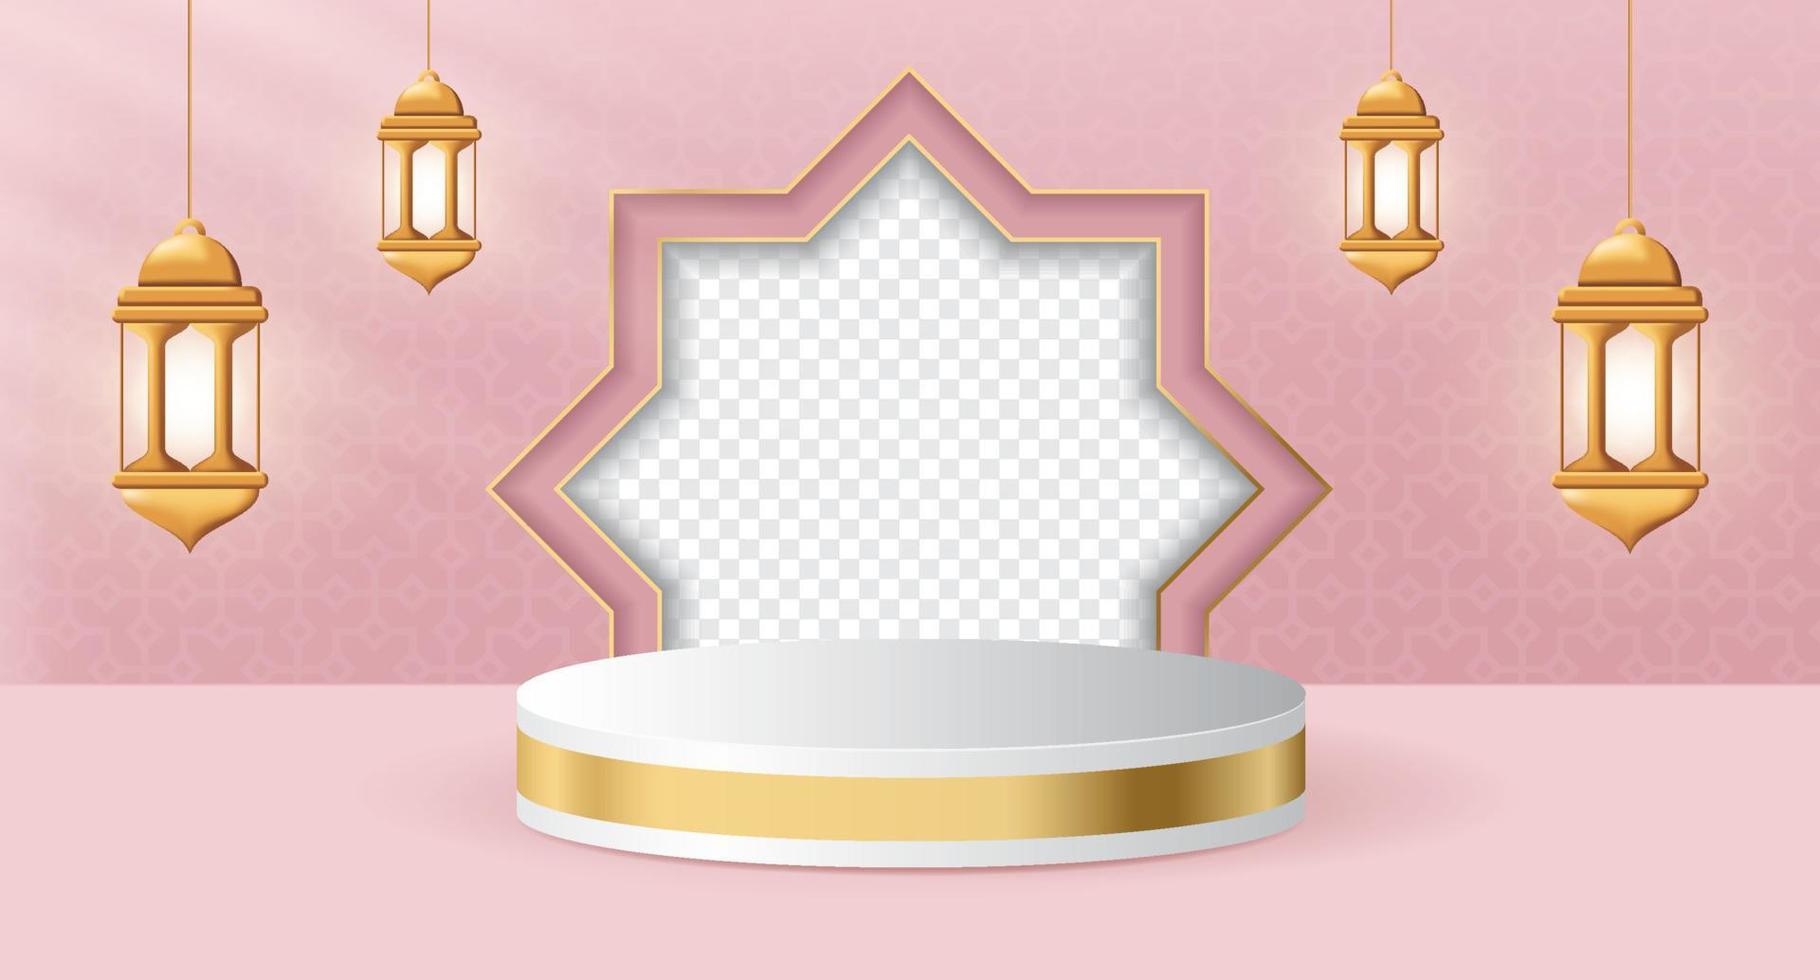 3d Prodotto Schermo podio a tema islamico con lanterna per Ramadan. islamico 3d Schermo podio decorazione con realistico lanterna. sociale media inviare con vuoto spazio per foto. vettore illustrazione